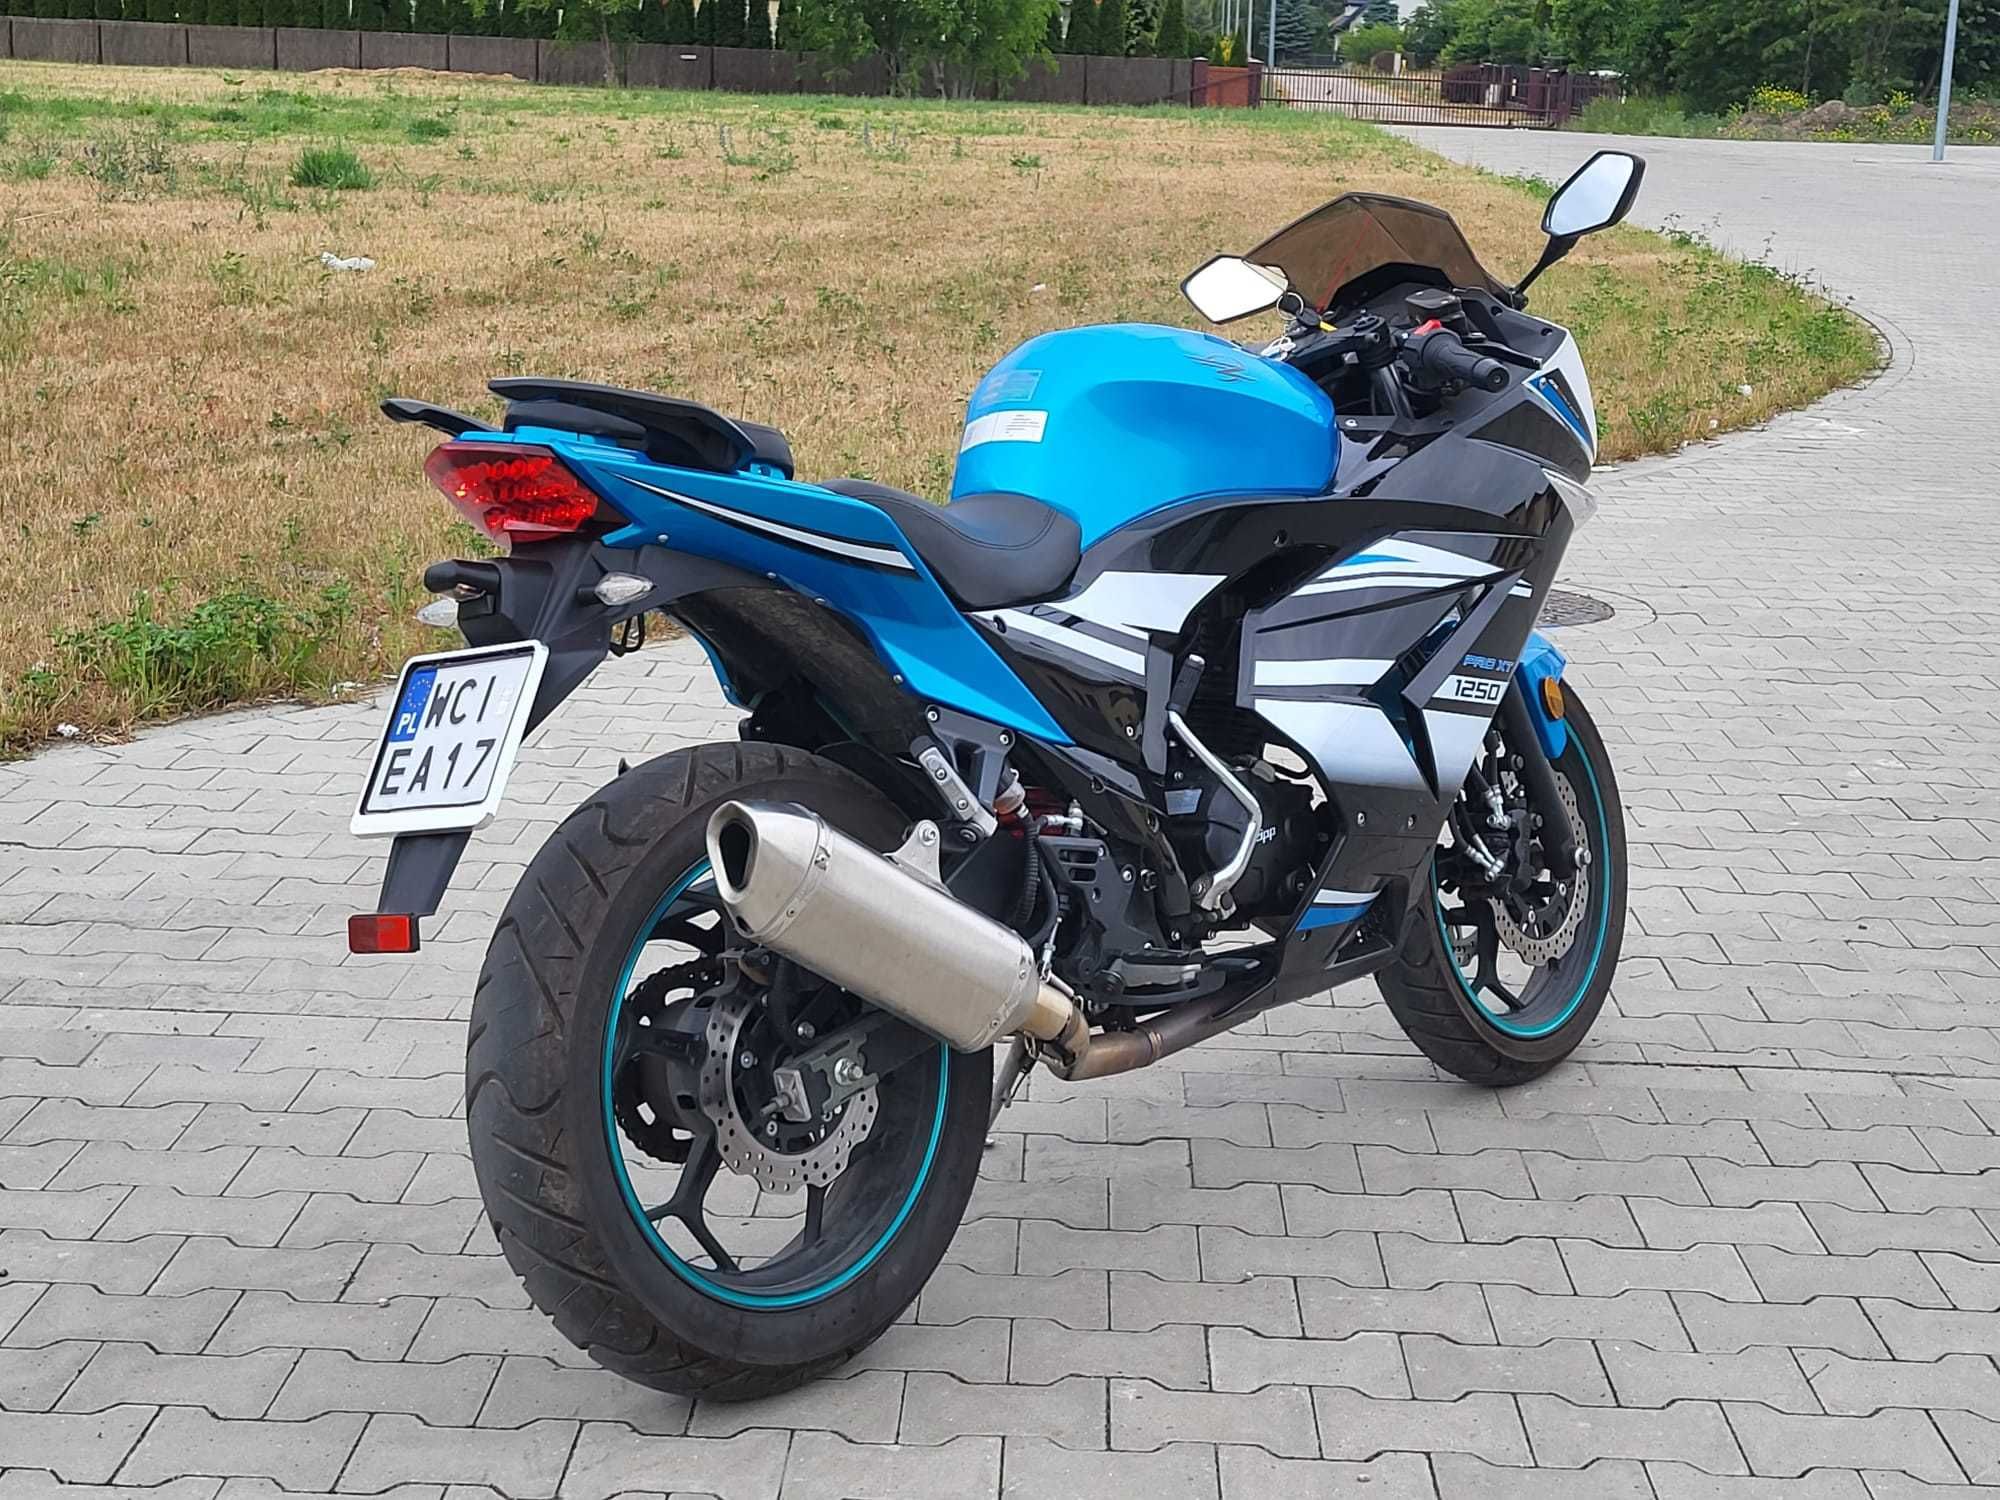 Motocykl Zipp Pro XT 125 cc , Raty , Dostawa